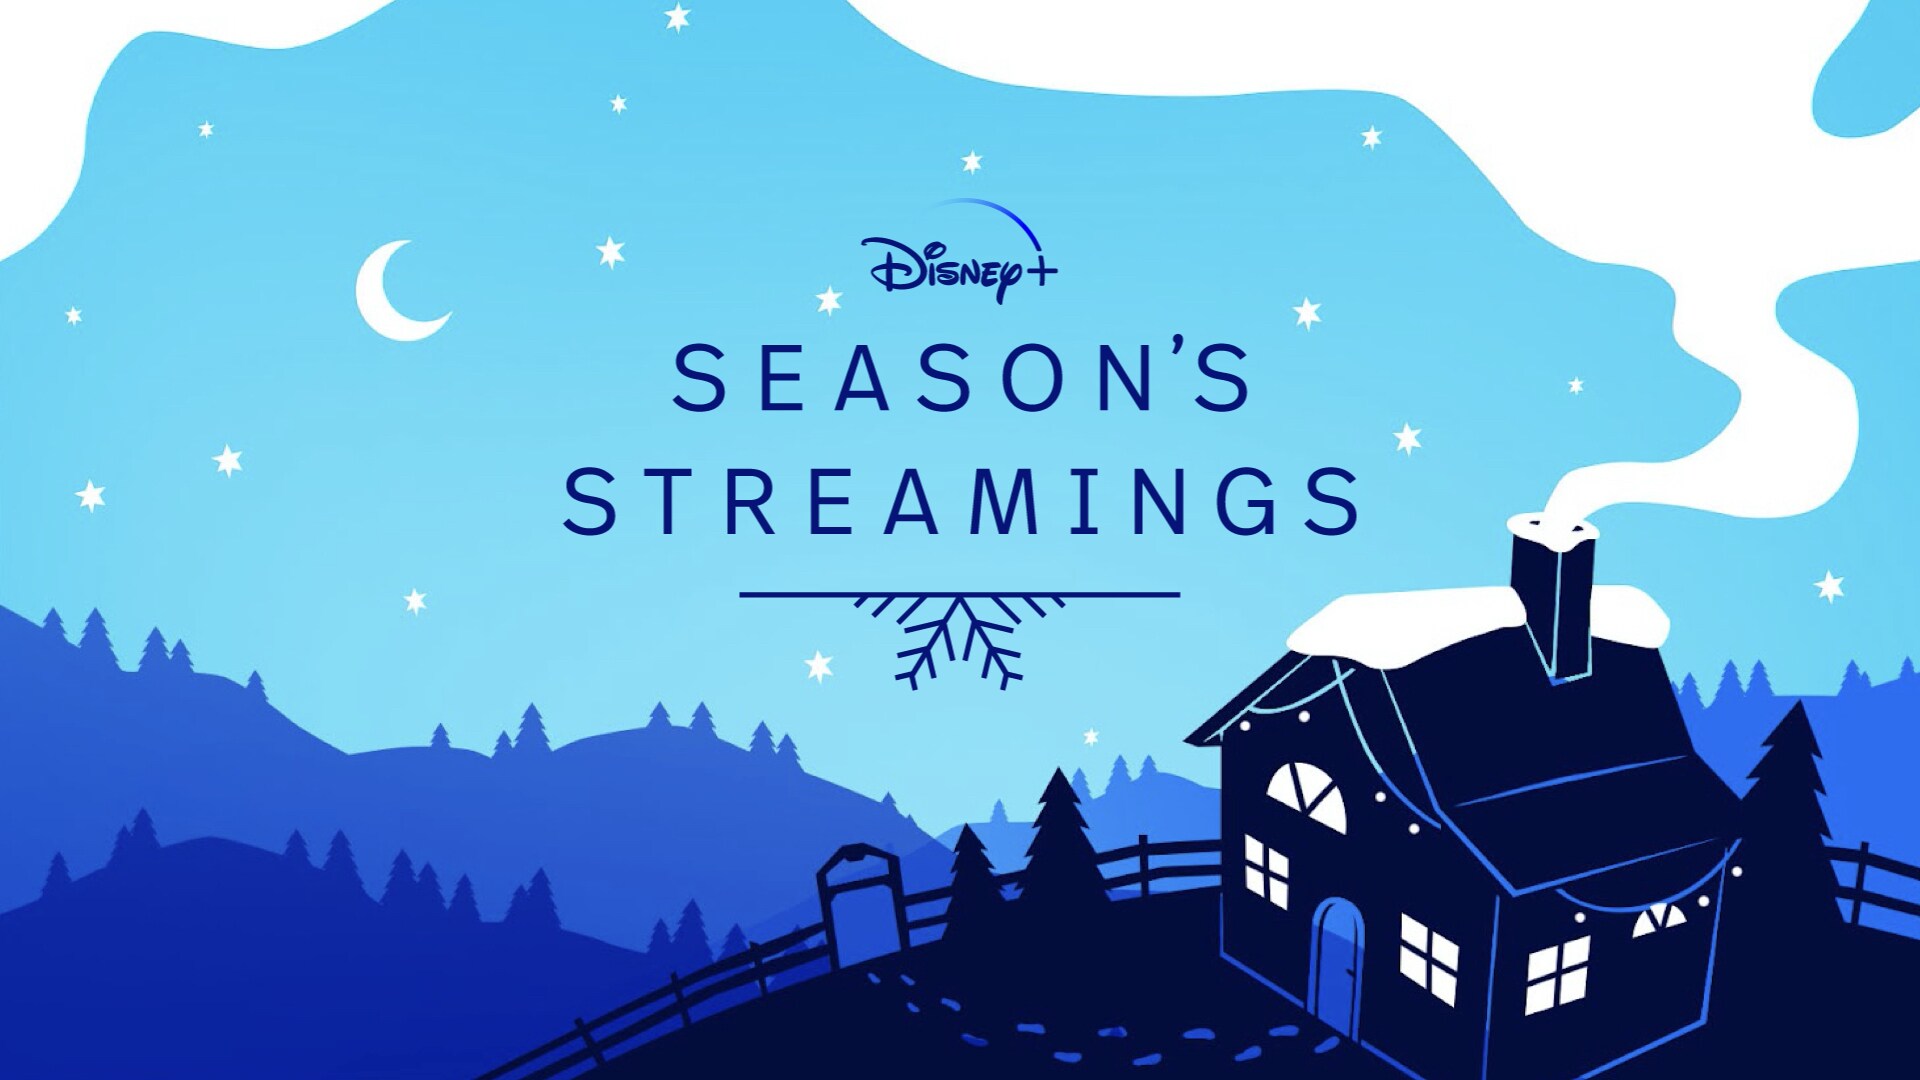 Tis The Season To Stream Holiday Favorites On Disney+